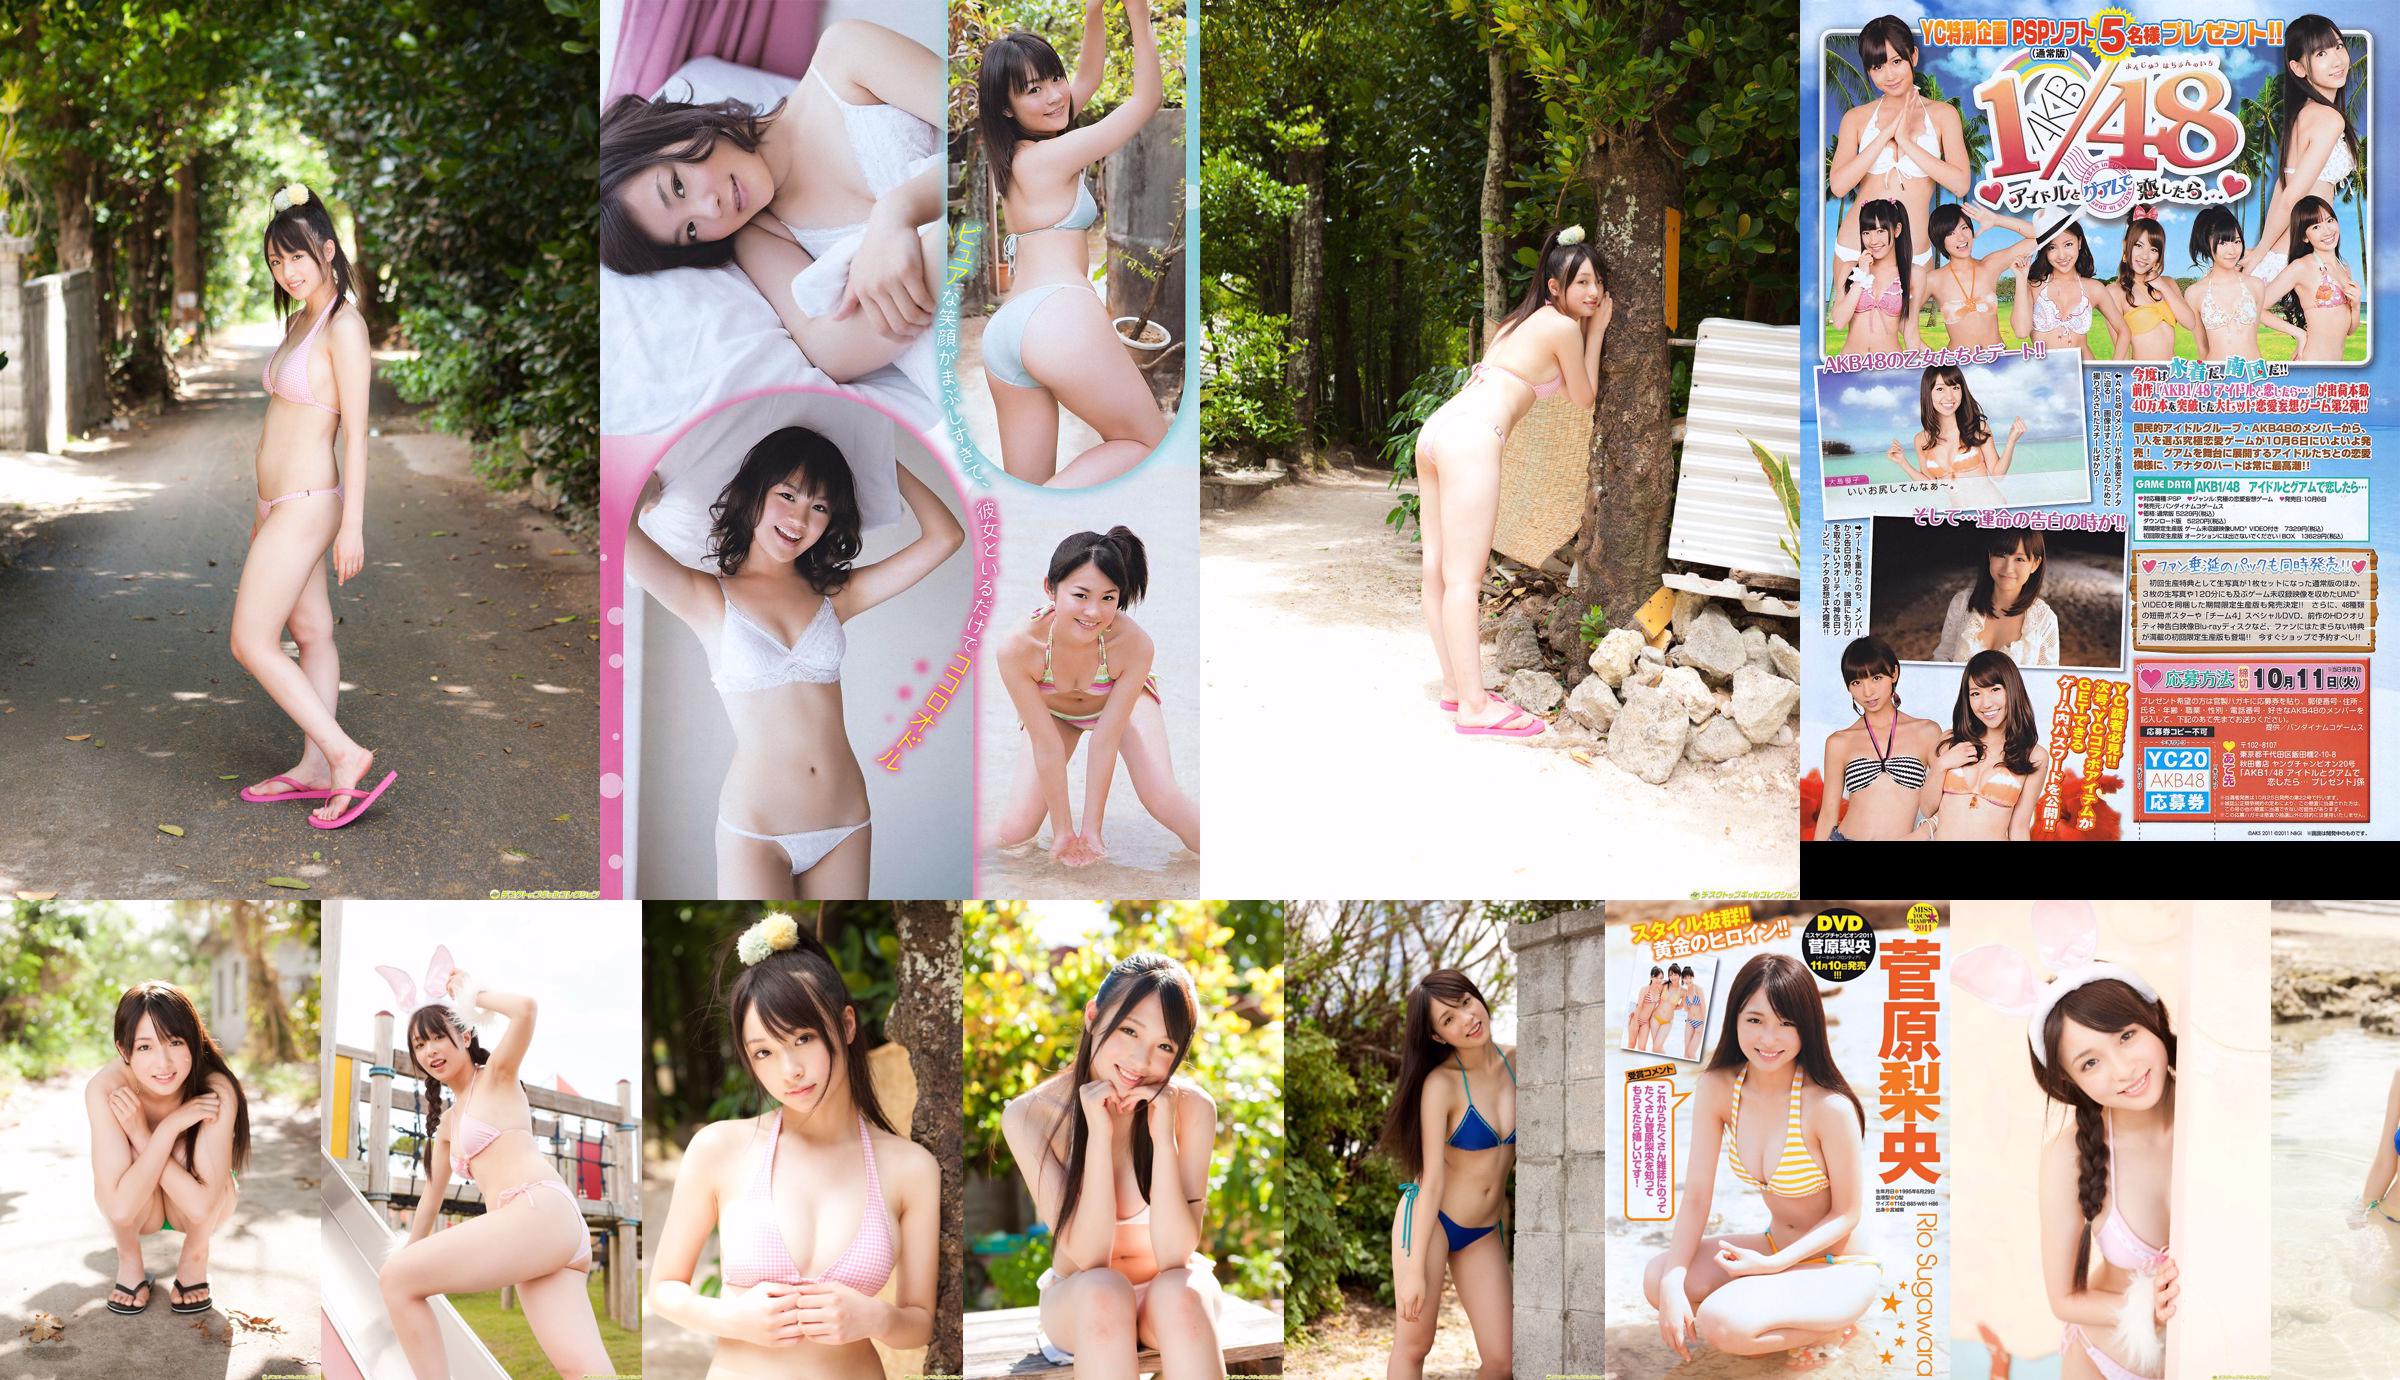 [Jovem campeão] Sugawara Risa, Horikawa Mikako, Matsushima no ou 2011 No. 20 Photo Magazine No.0934cb Página 1